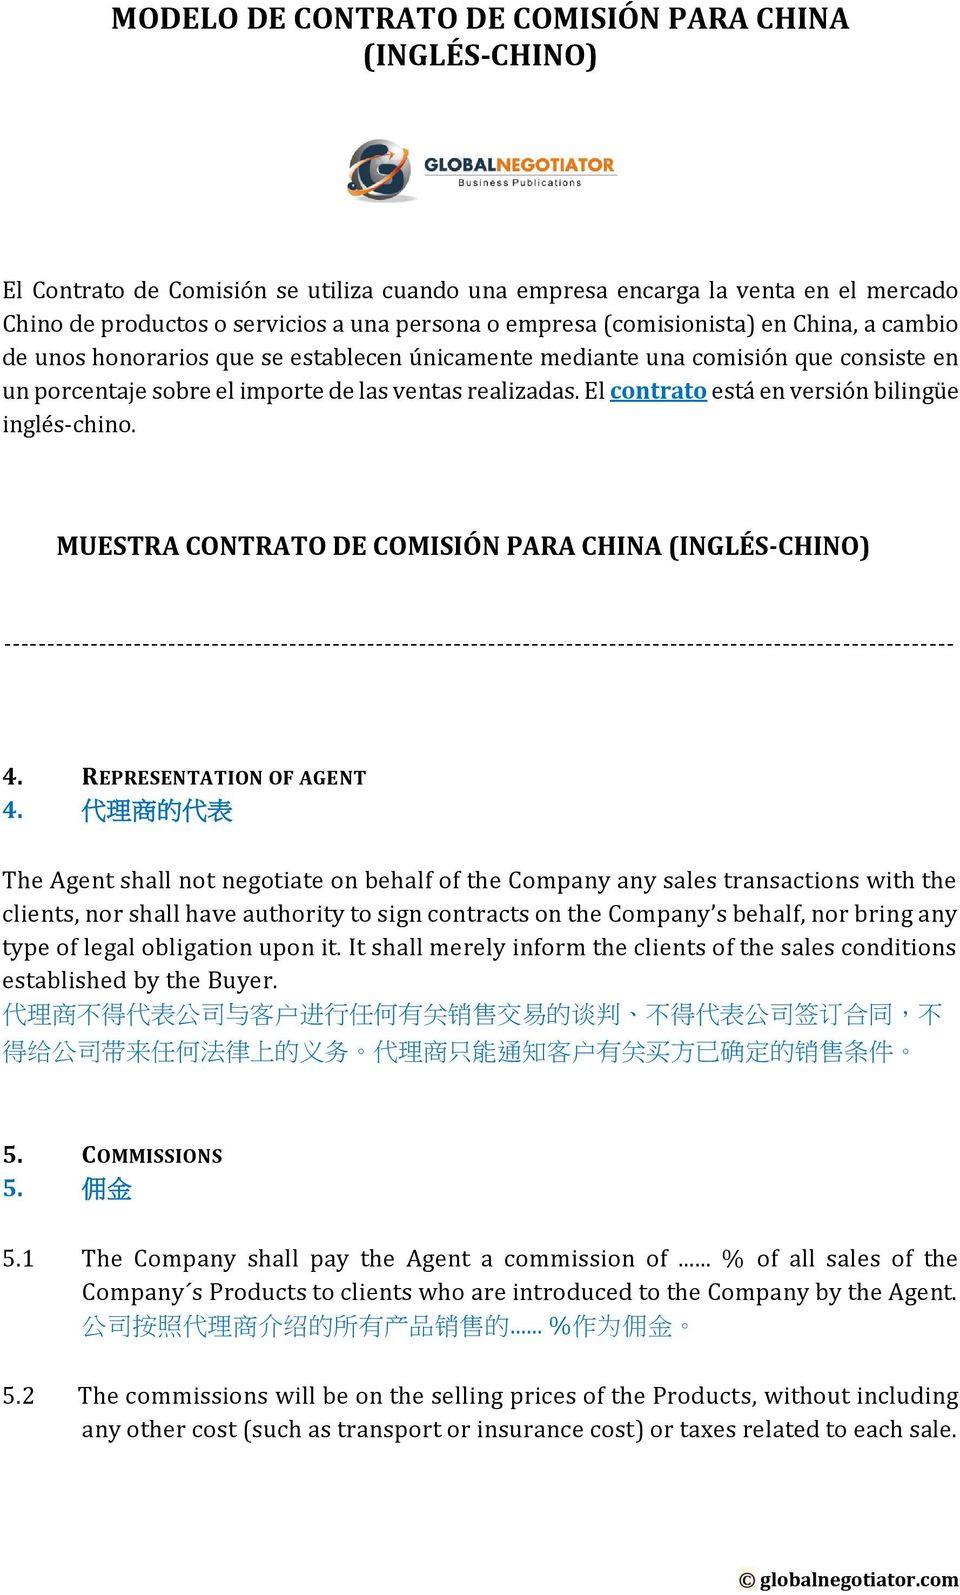 El contrato está en versión bilingüe inglés-chino.